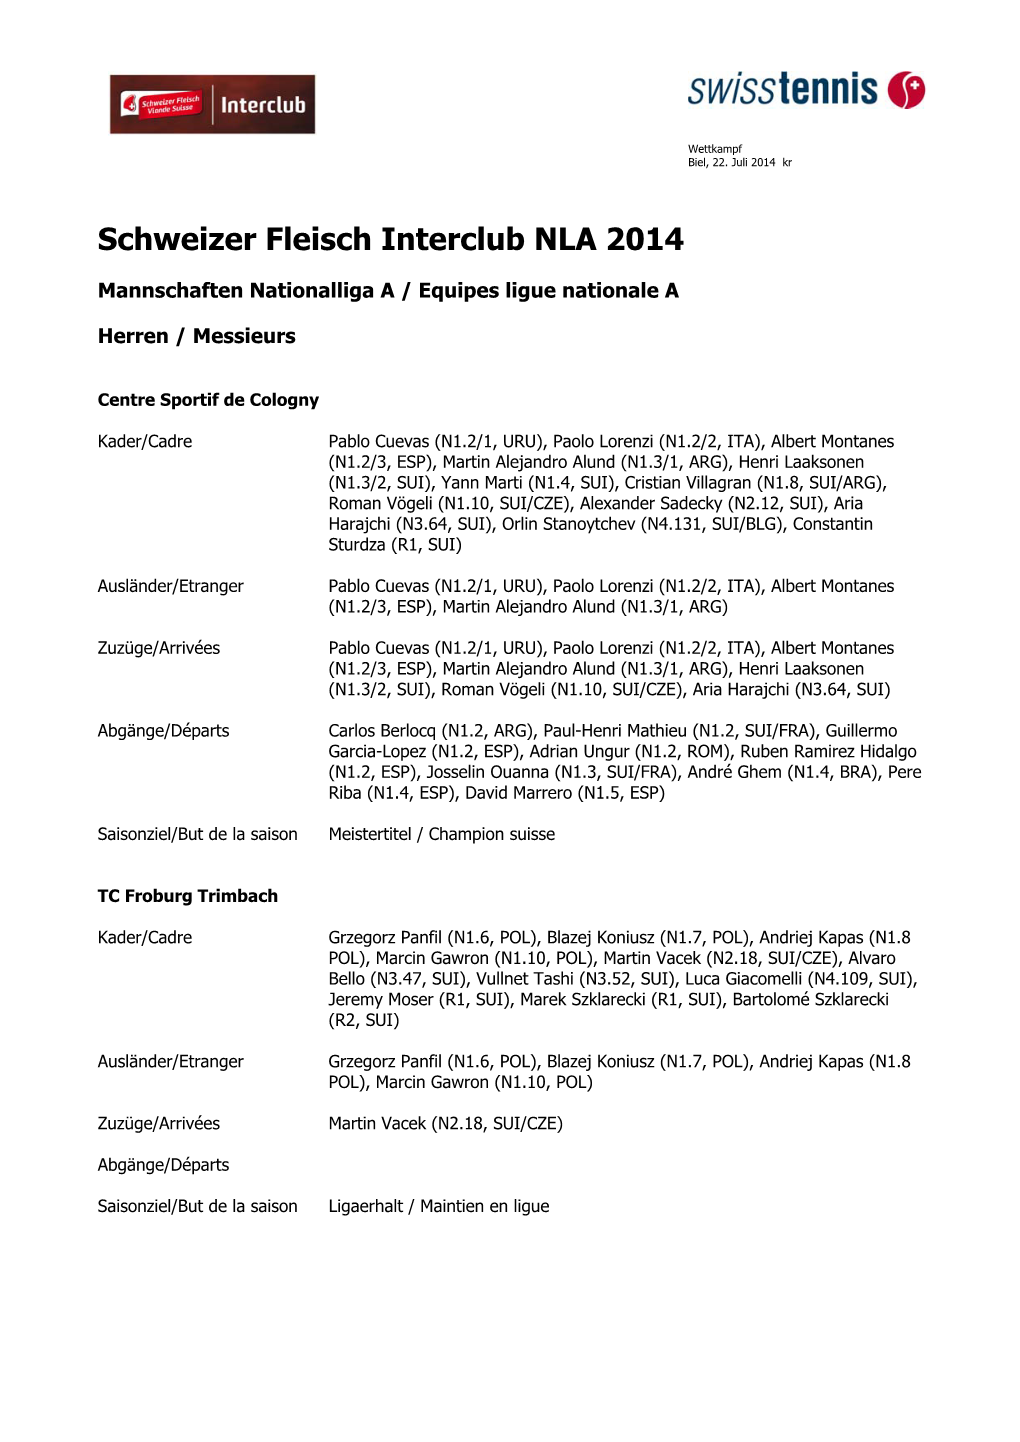 Schweizer Fleisch Interclub NLA 2014